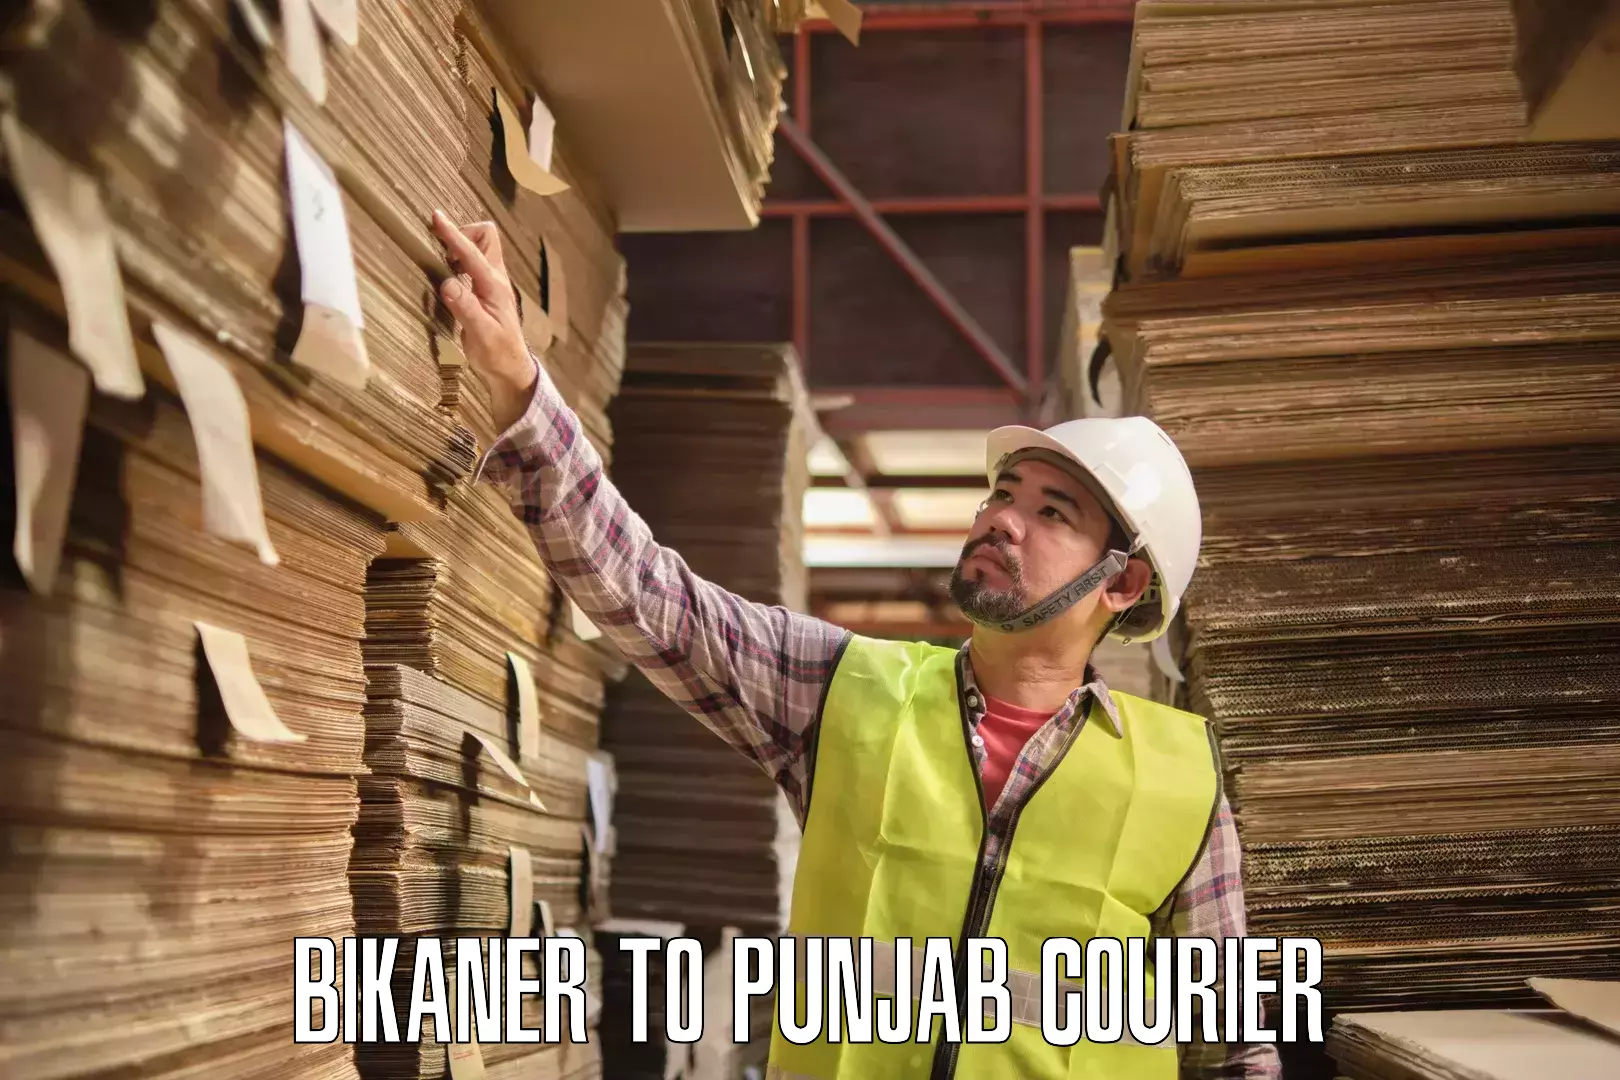 Secure packaging Bikaner to Dhilwan